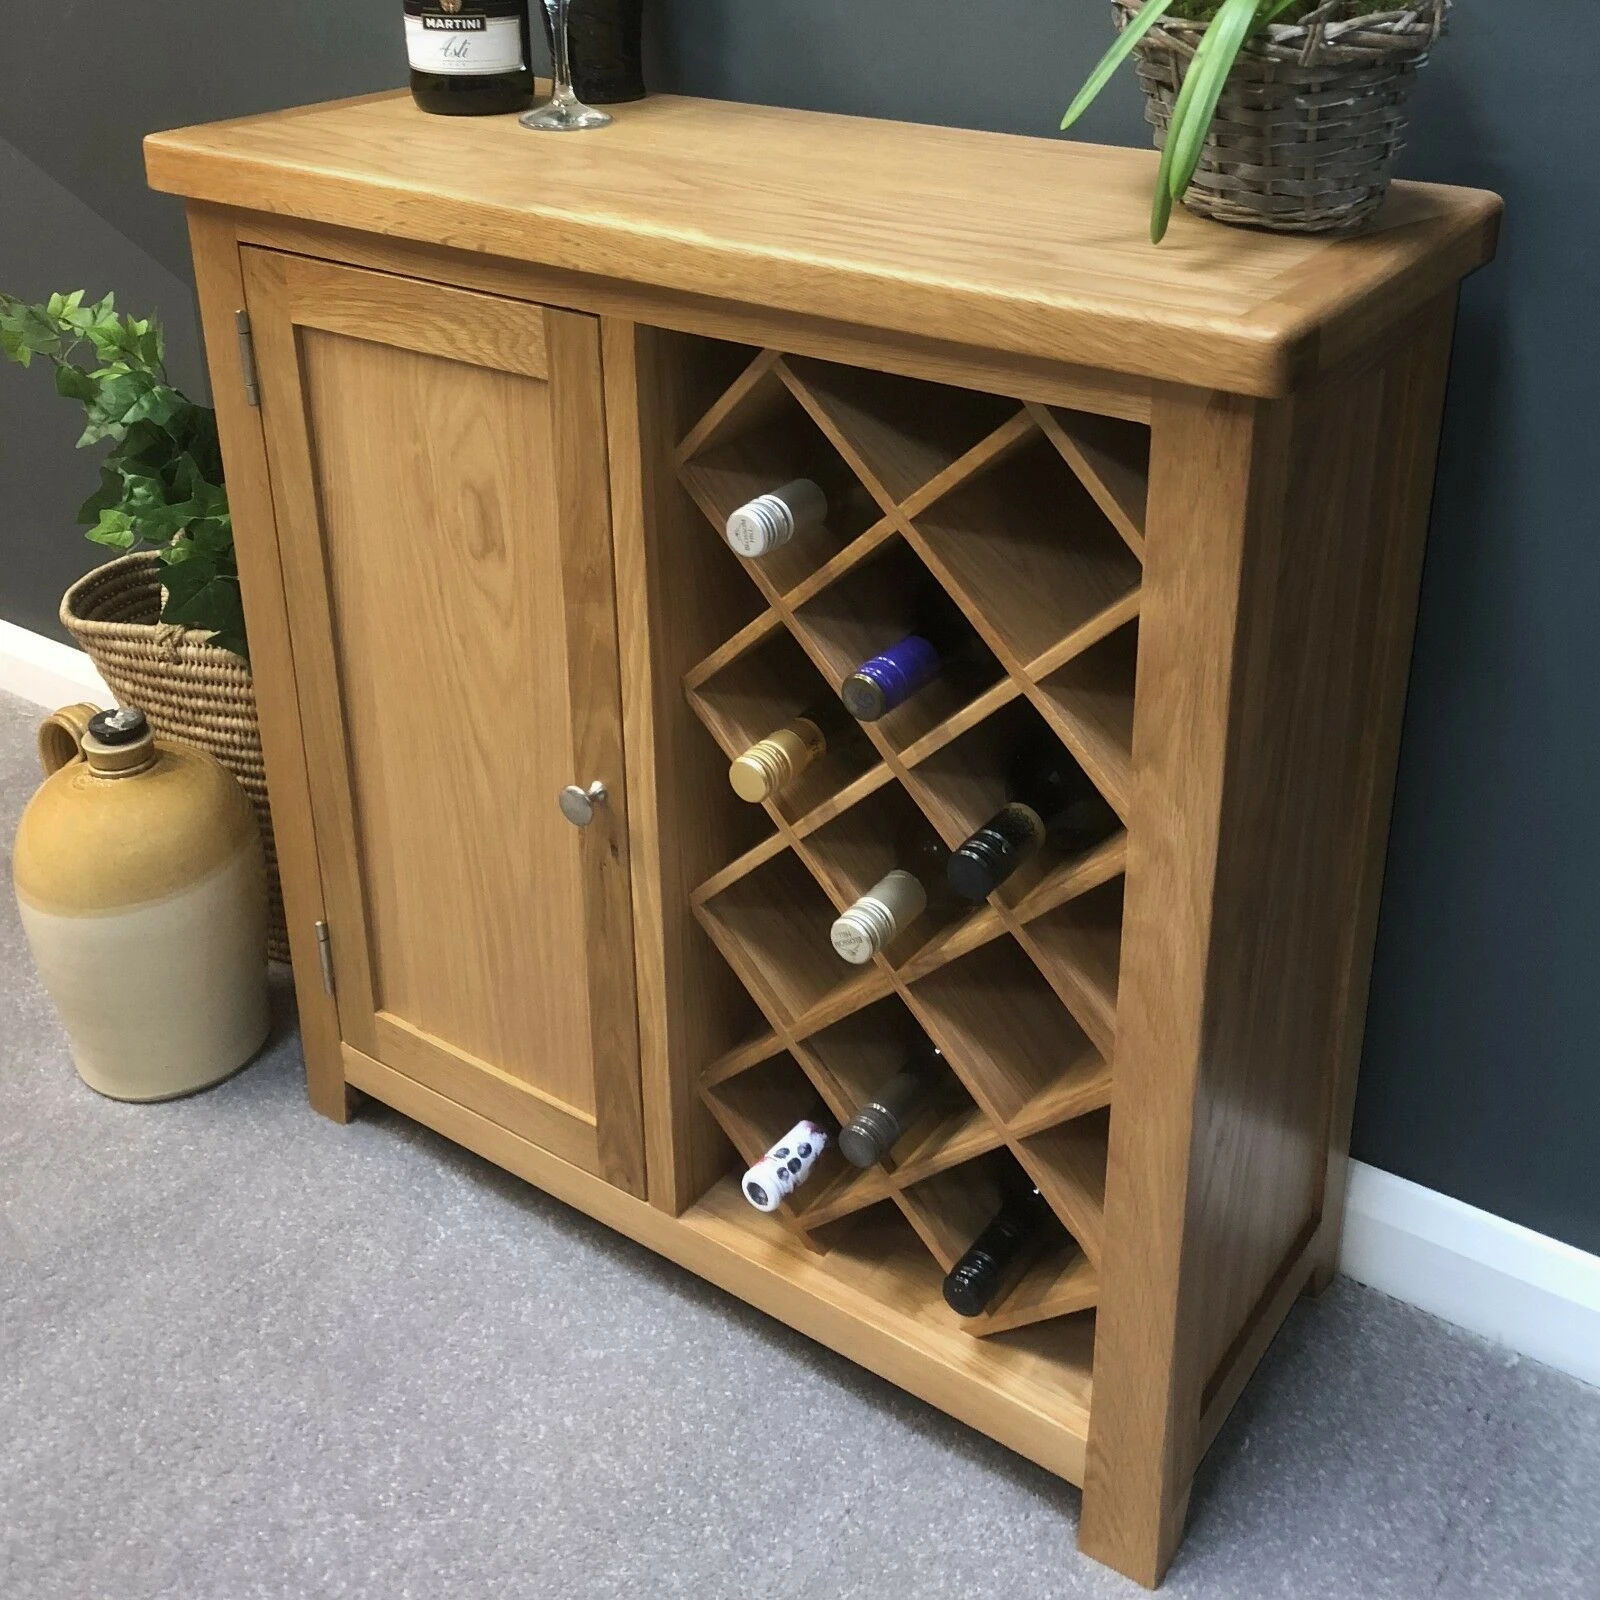 Solid Oak Wood Furniture Living Bed Room Wine Rack Cabinet Storage Shelves